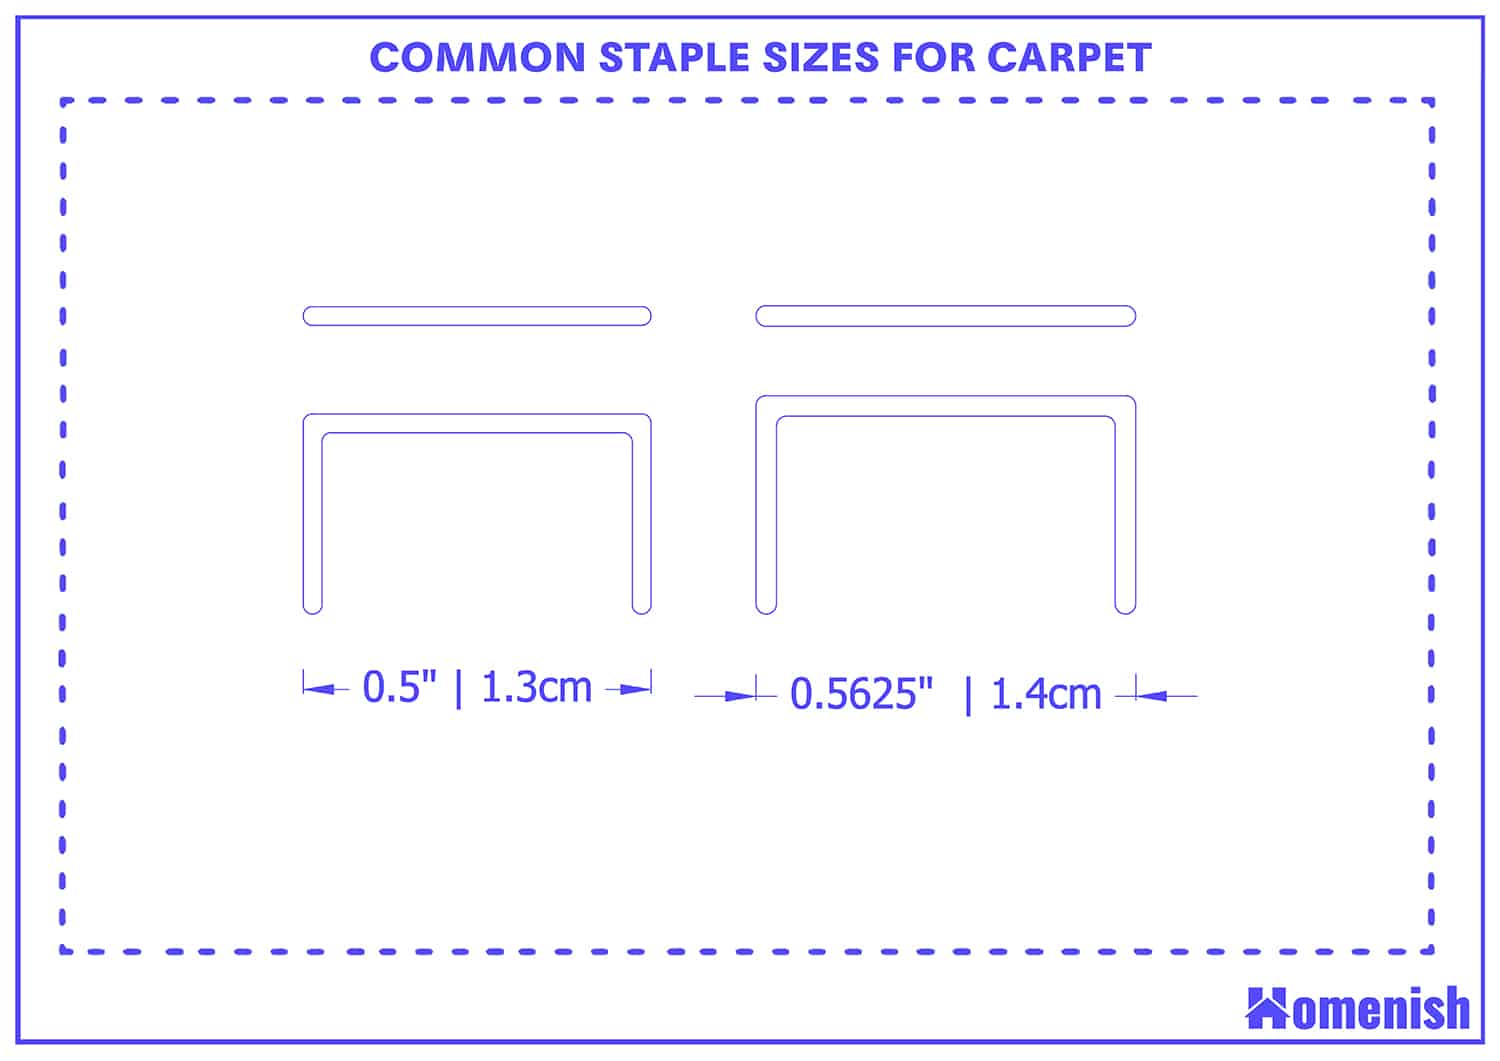 Staples sizes for carpet